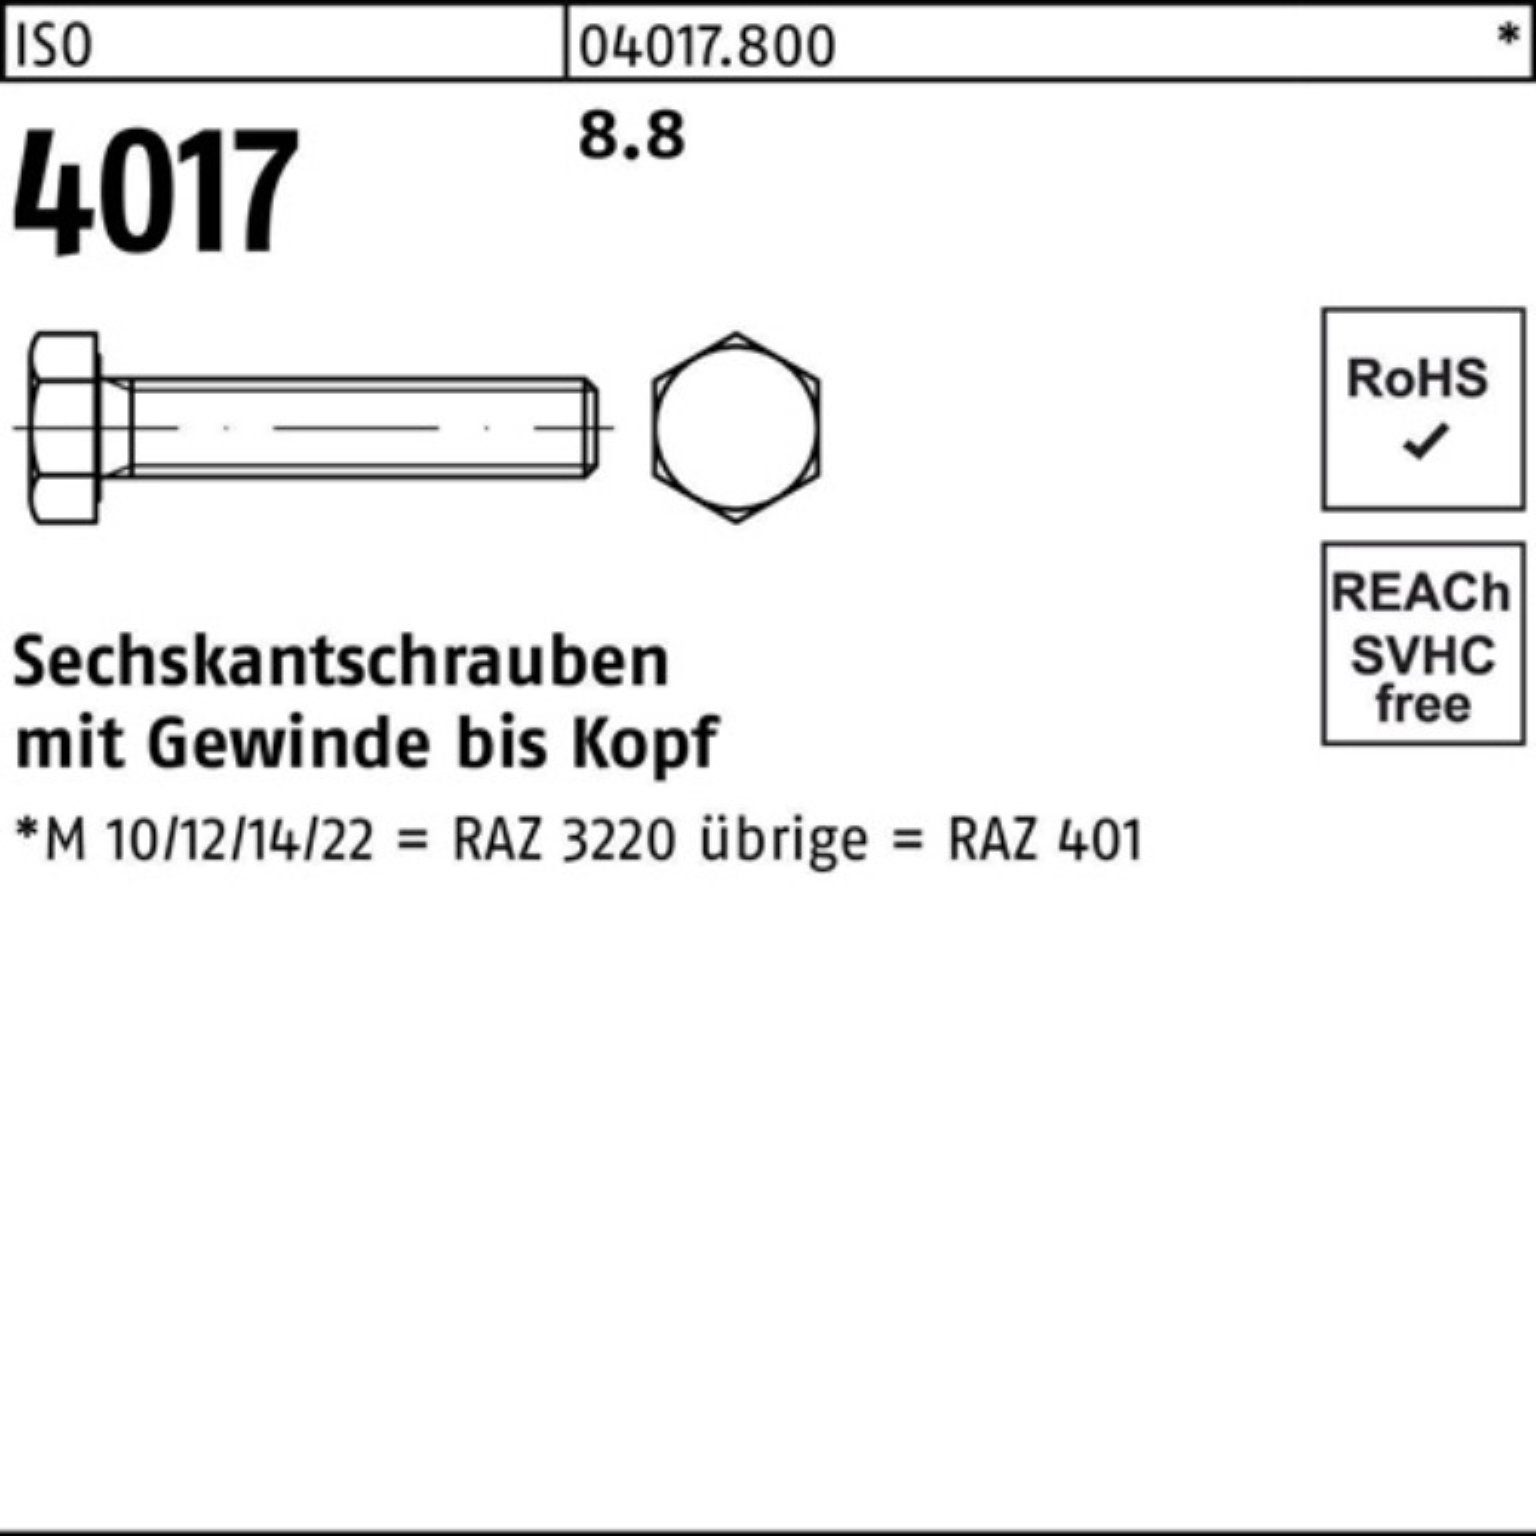 Bufab Sechskantschraube 100er 8.8 180 4017 1 401 Pack ISO VG ISO Sechskantschraube M20x Stück